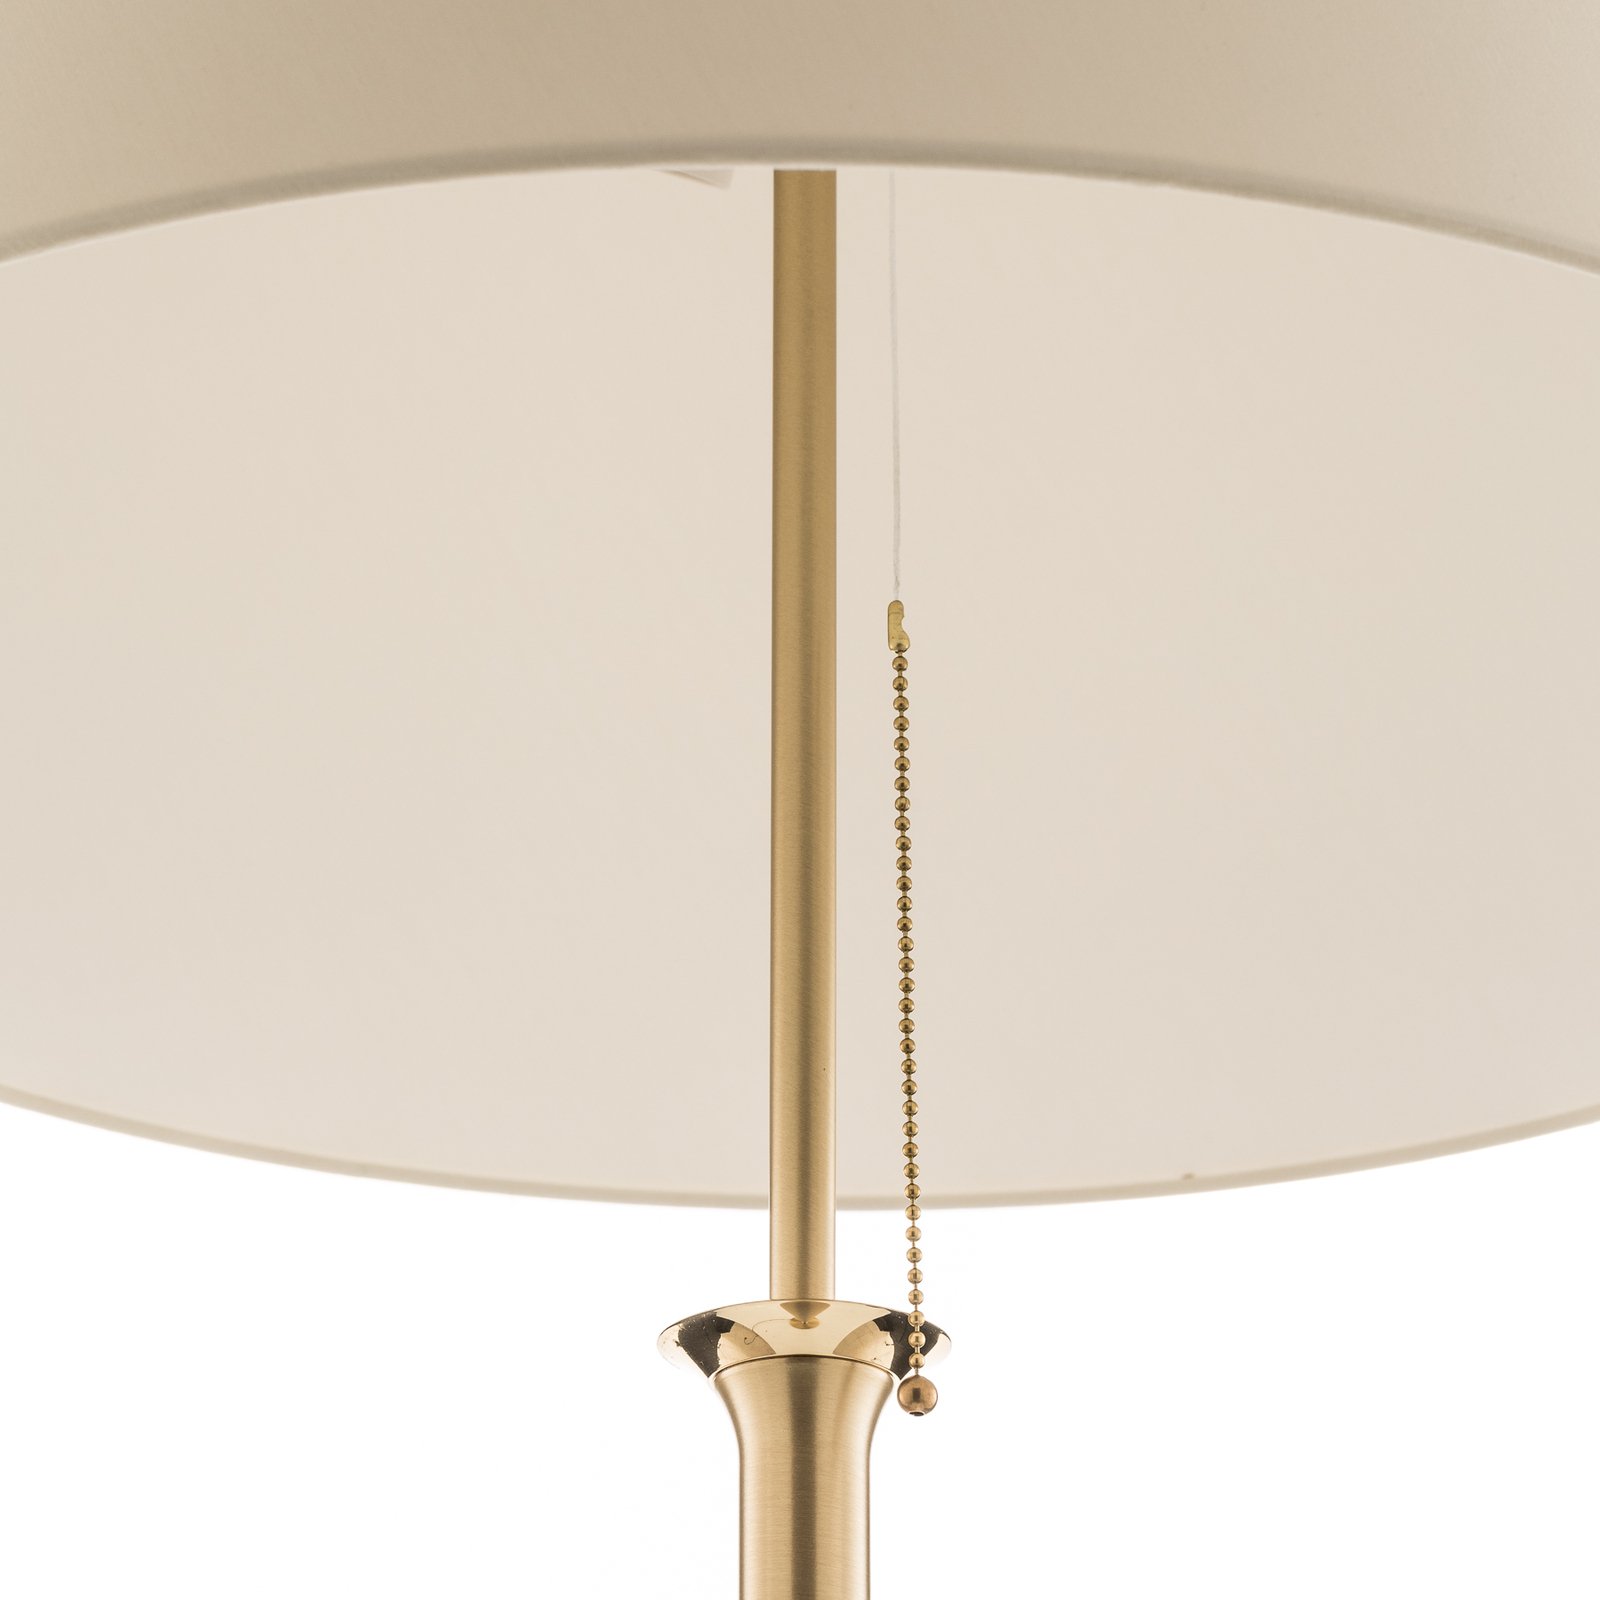 Royce floor lamp with ceiling luminator cream